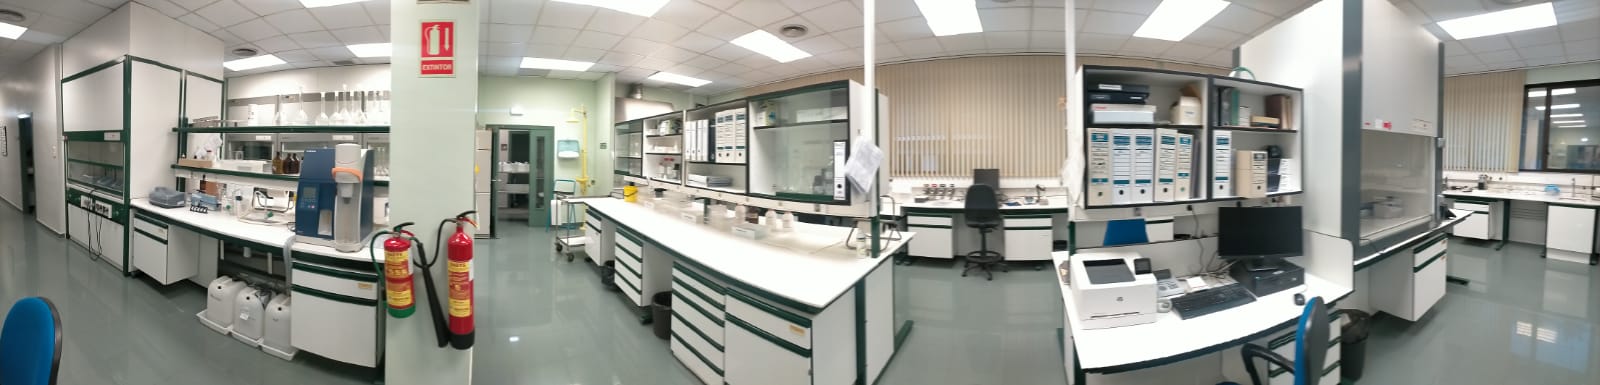 Laboratorio Físico-Químico Imagen 2